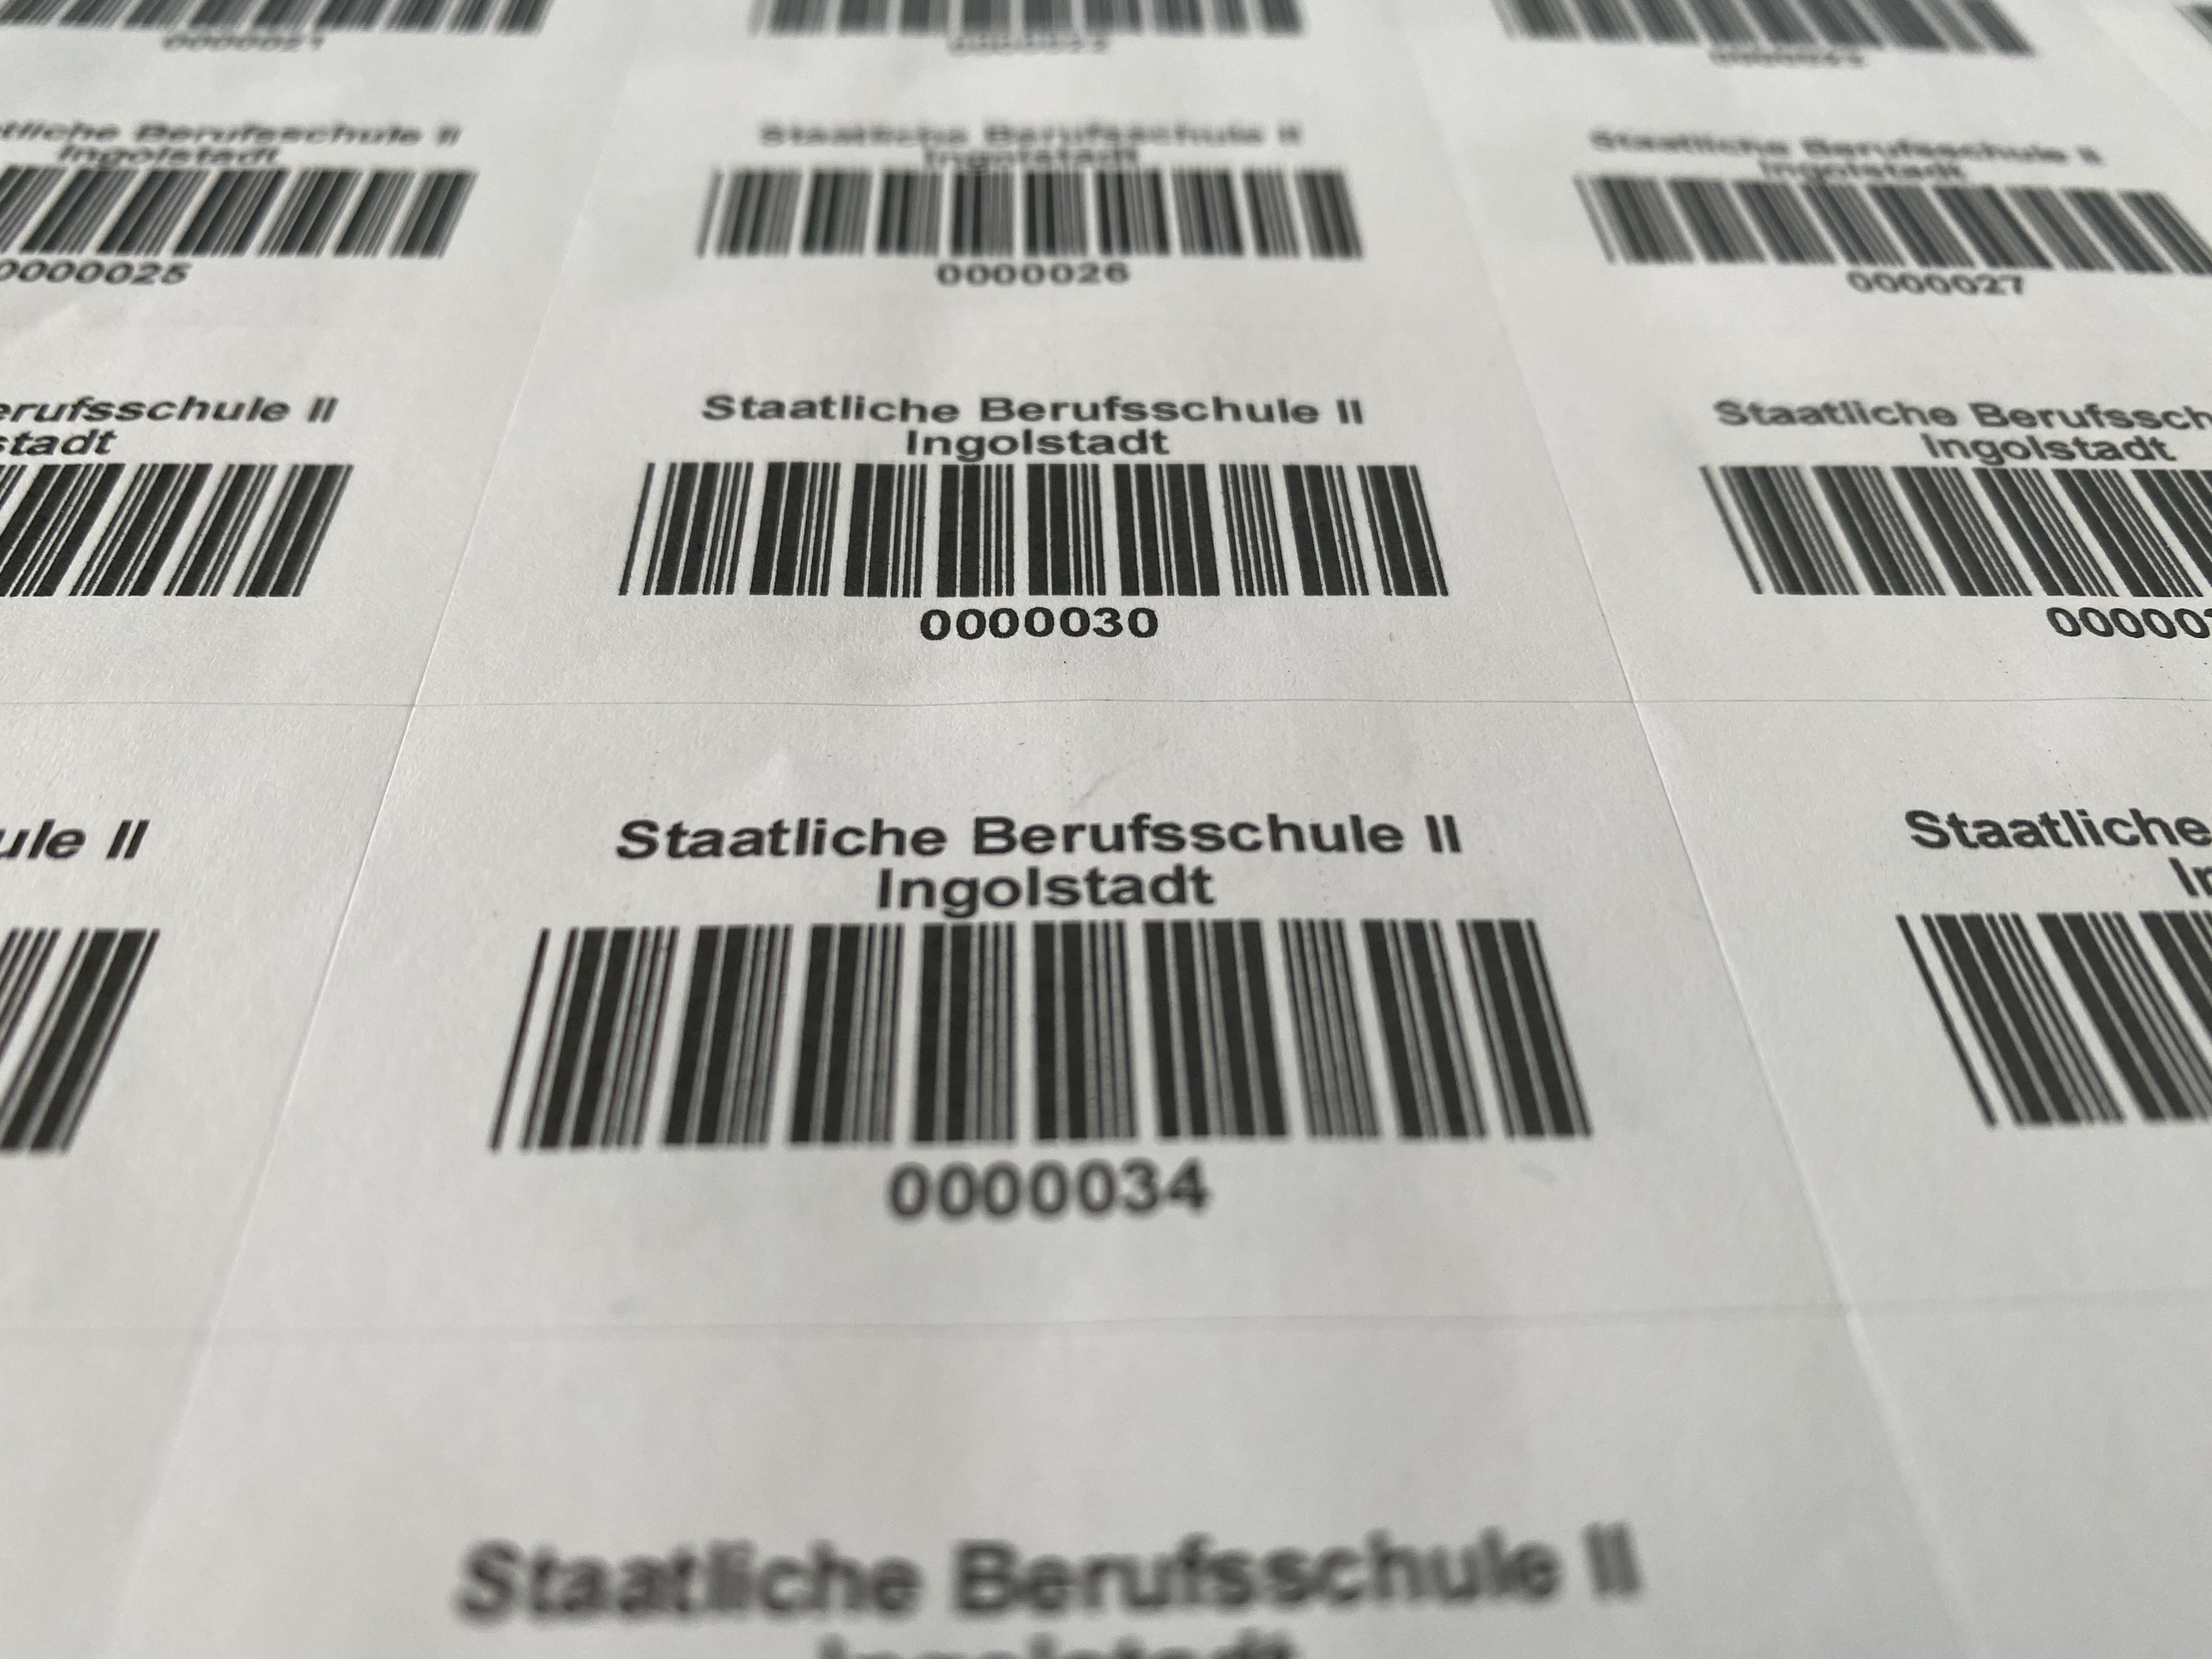 Individuell bedruckte Laser-Barcode-Etiketten auf Bögen